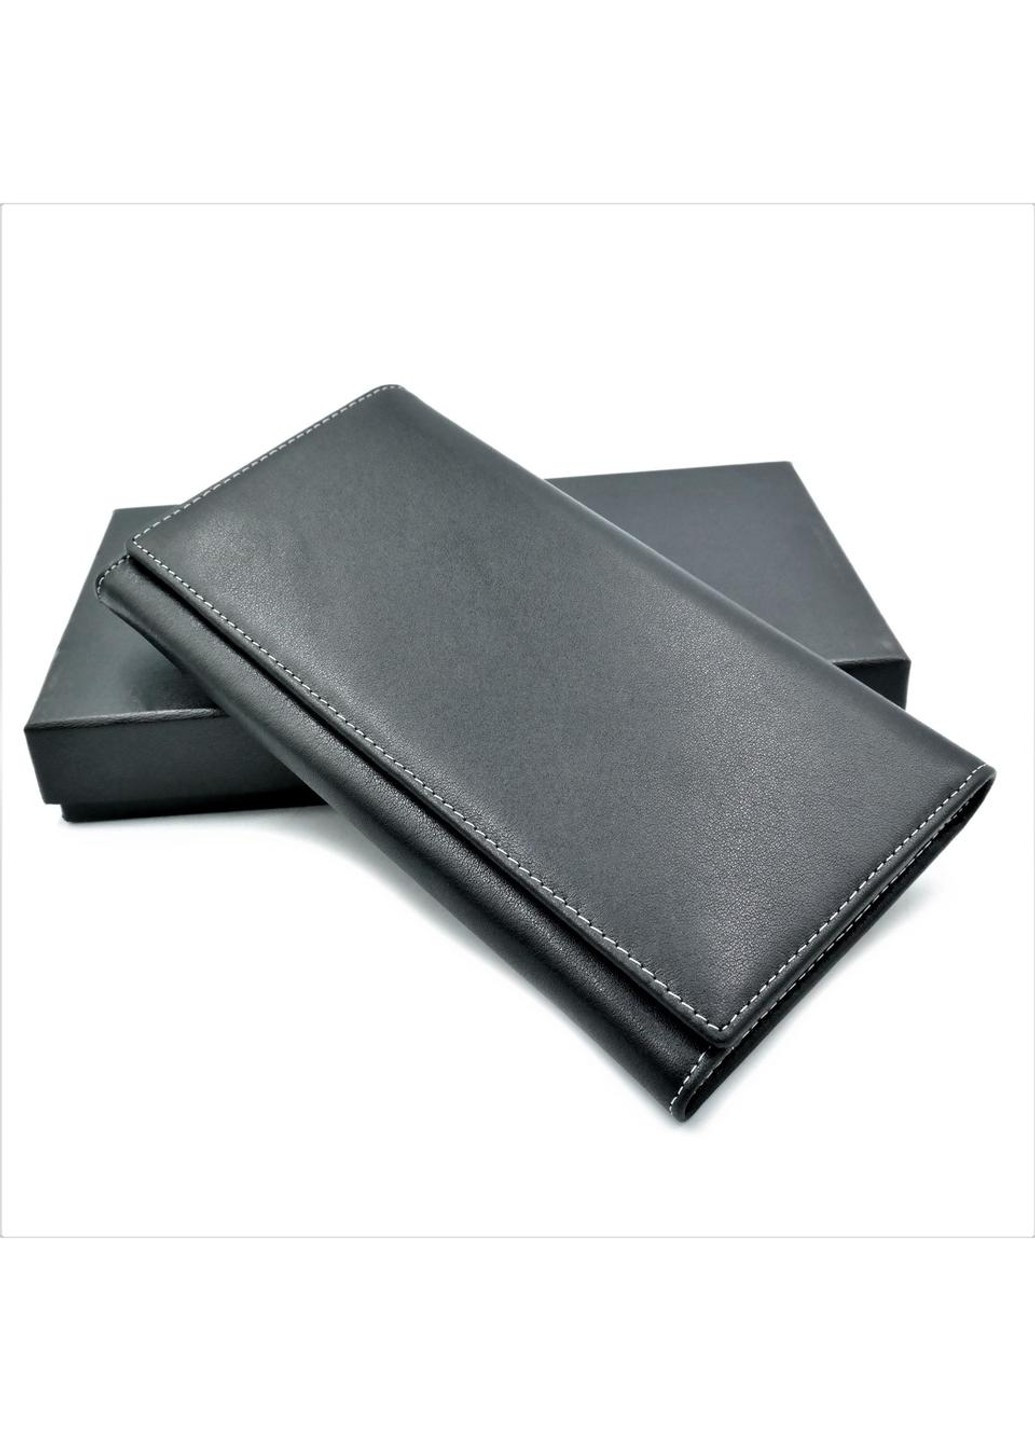 Мужской кожаный клатч-кошелек 19 х 10,5 х 2,5 см Черный wtro-165-5-40 Weatro (272950005)